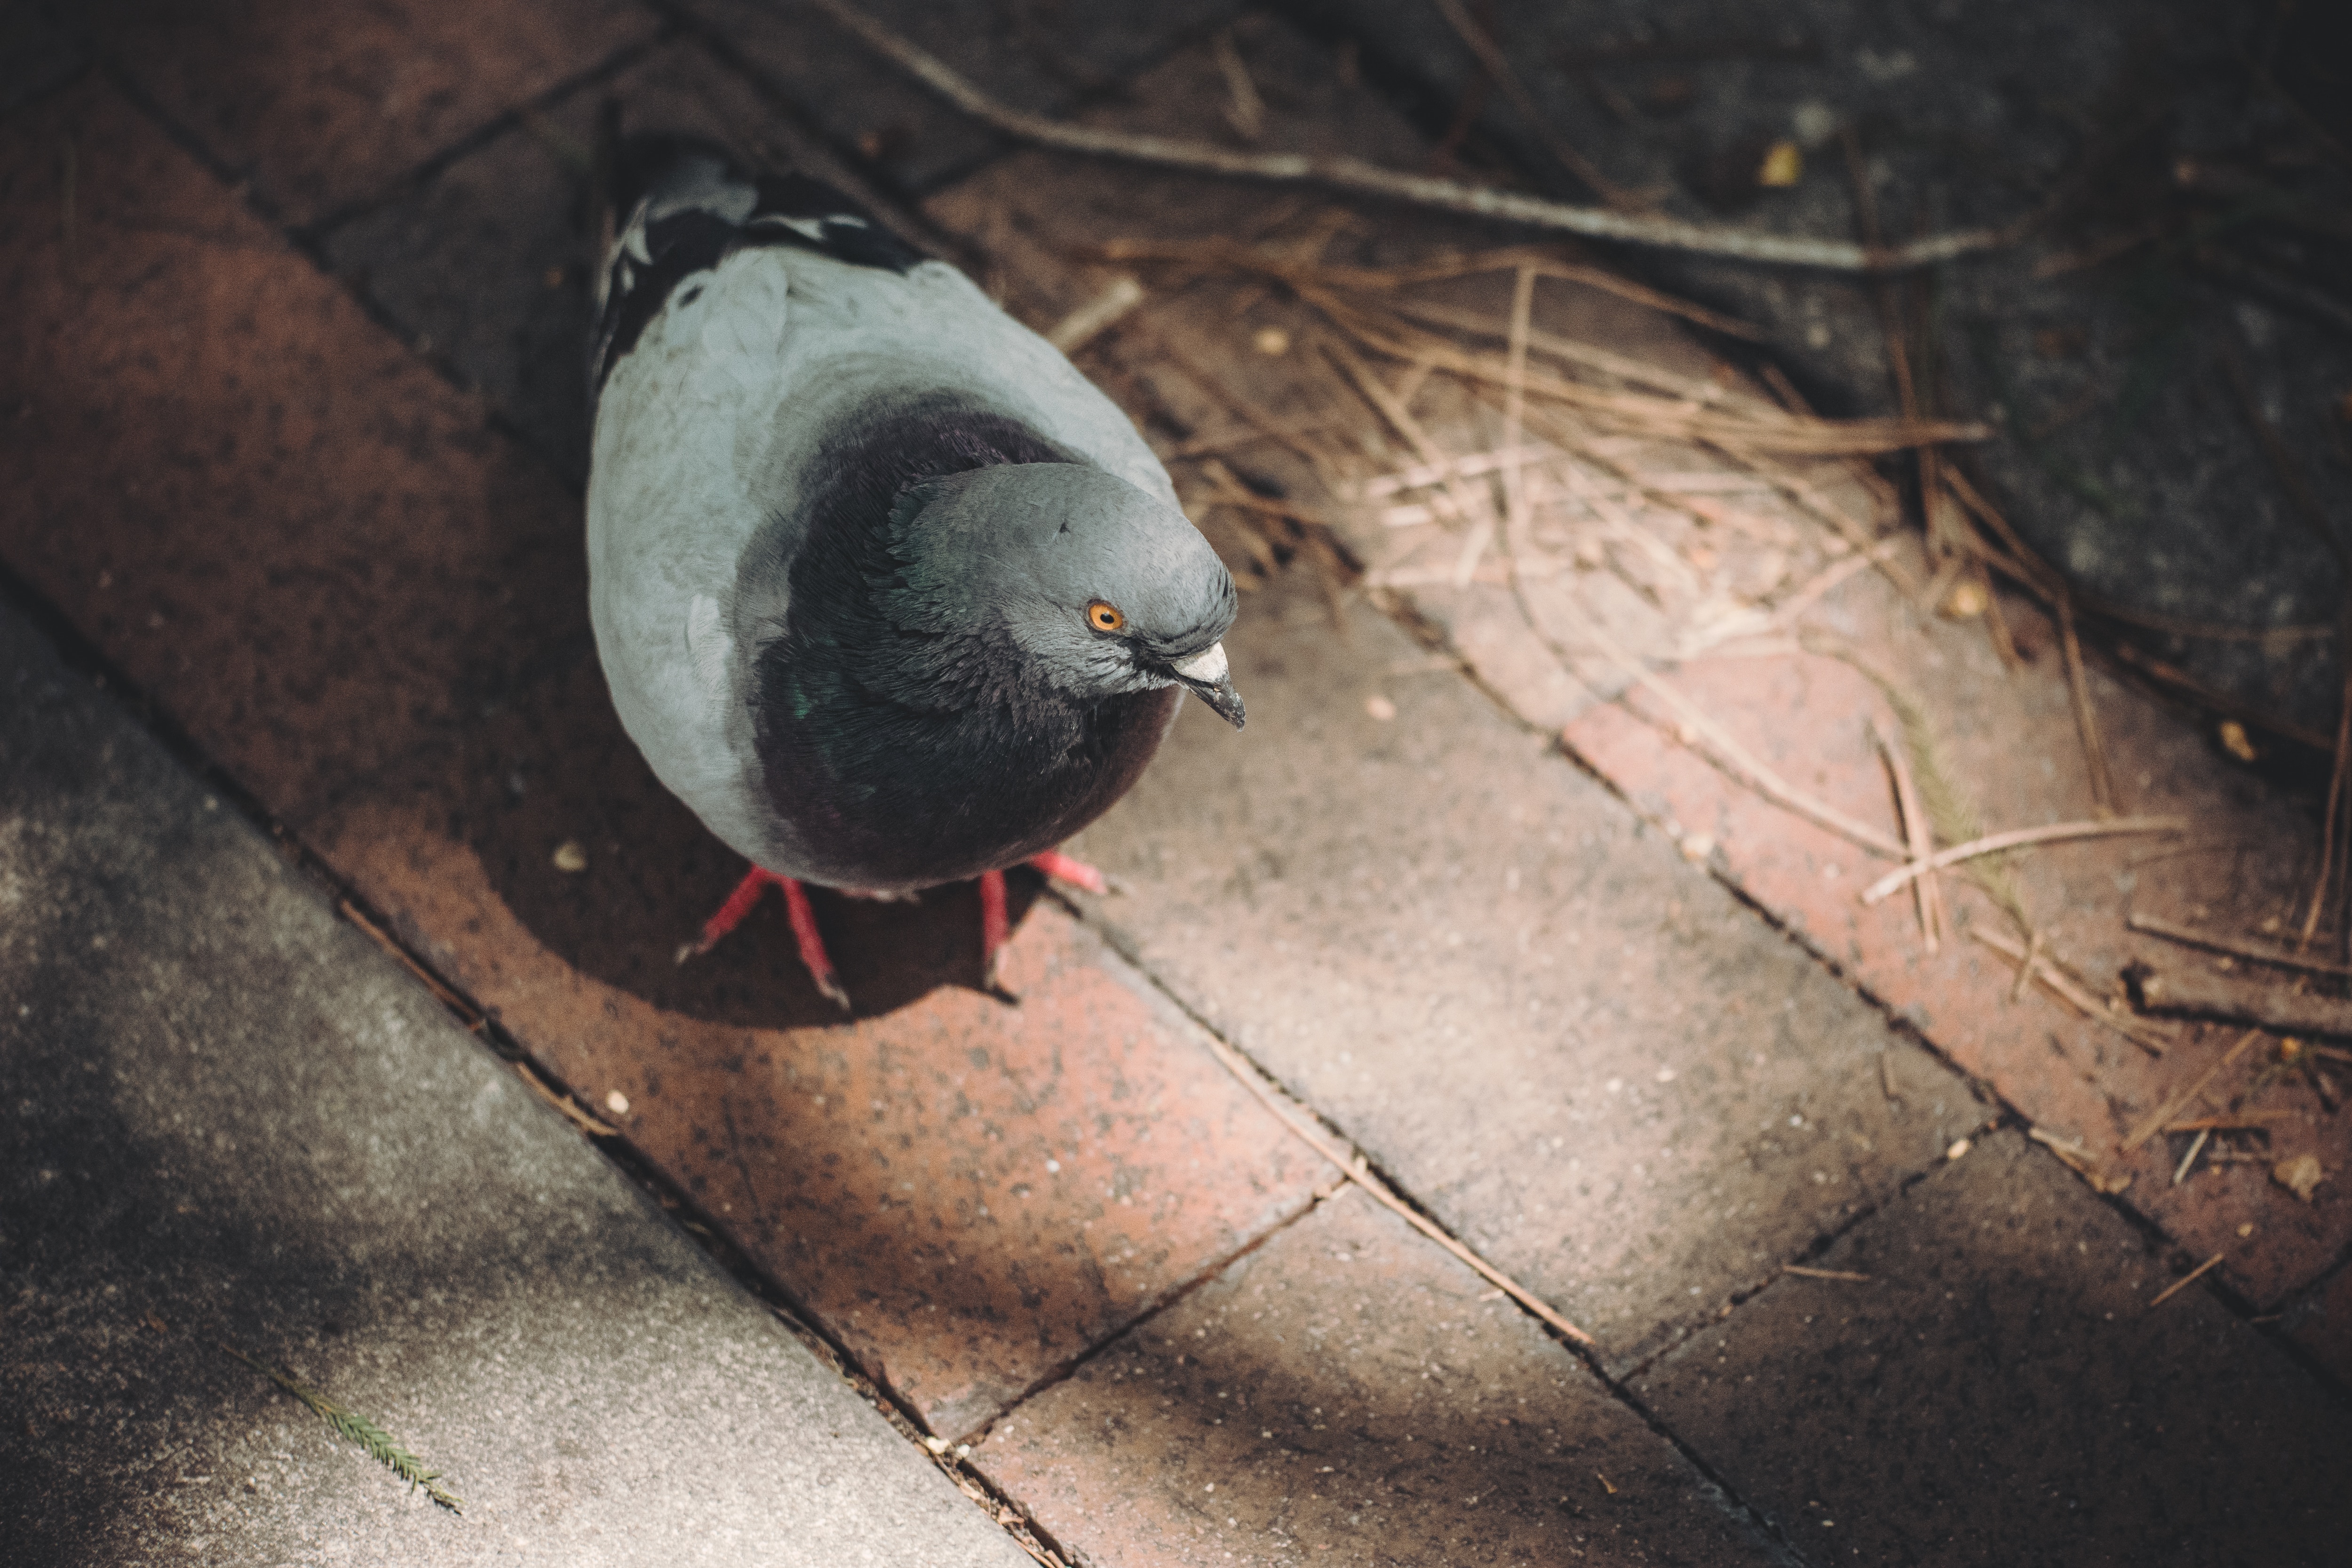 rock pigeon on brick floor